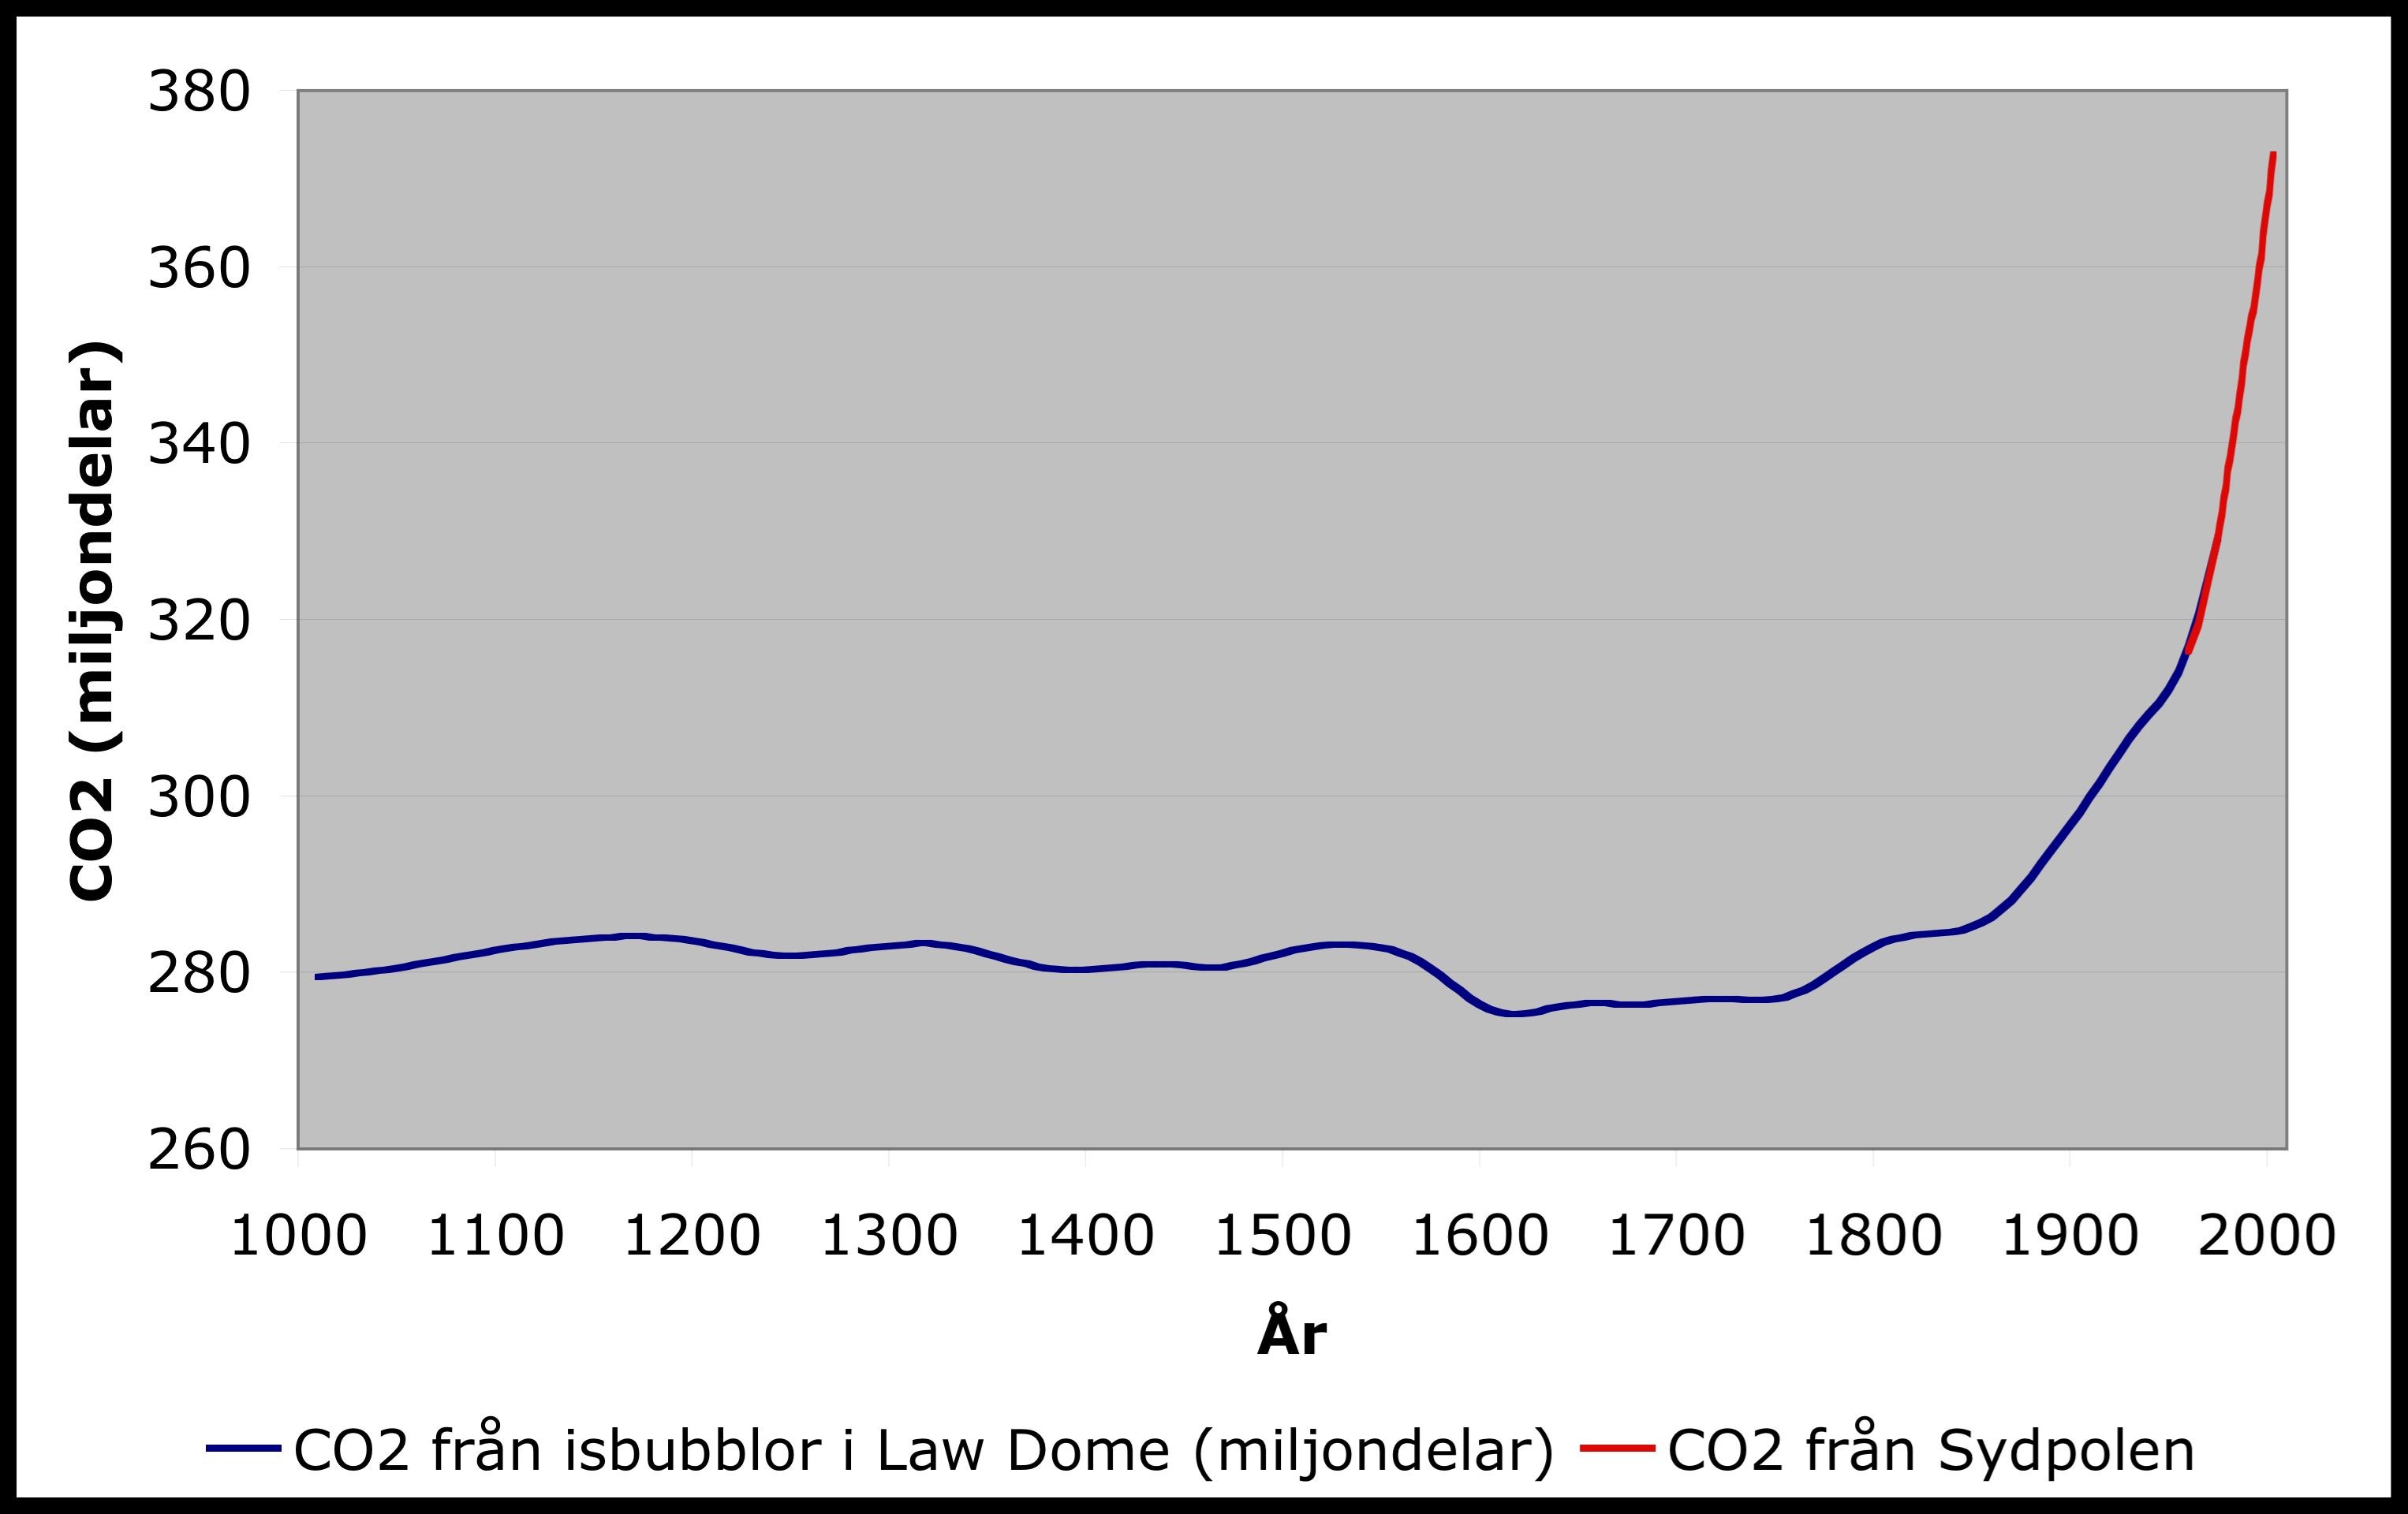 Graf som visar Co2-historiken från år 1000 till idag där nivån varit stadig på 280 miljondelar fram till mitten av 1900-talet då den gick upp till 380 miljondelar.